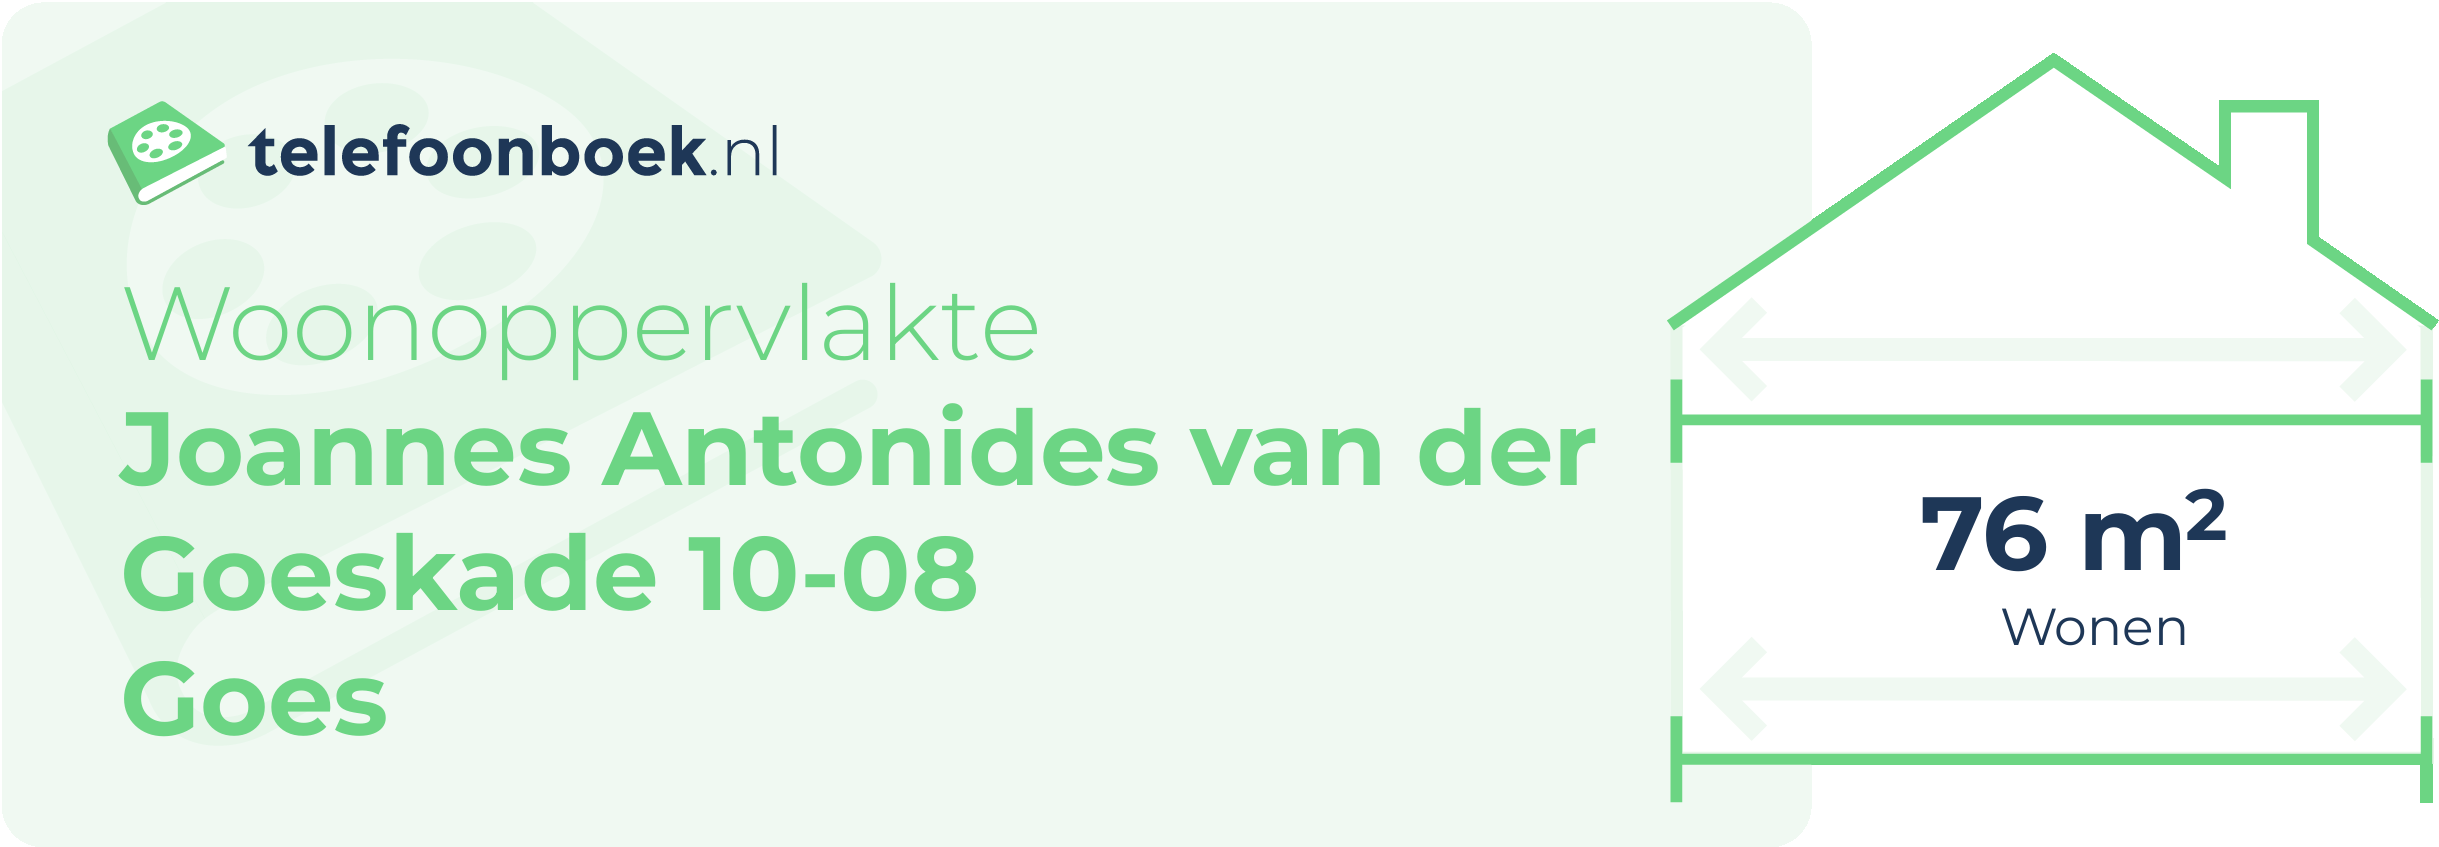 Woonoppervlakte Joannes Antonides Van Der Goeskade 10-08 Goes